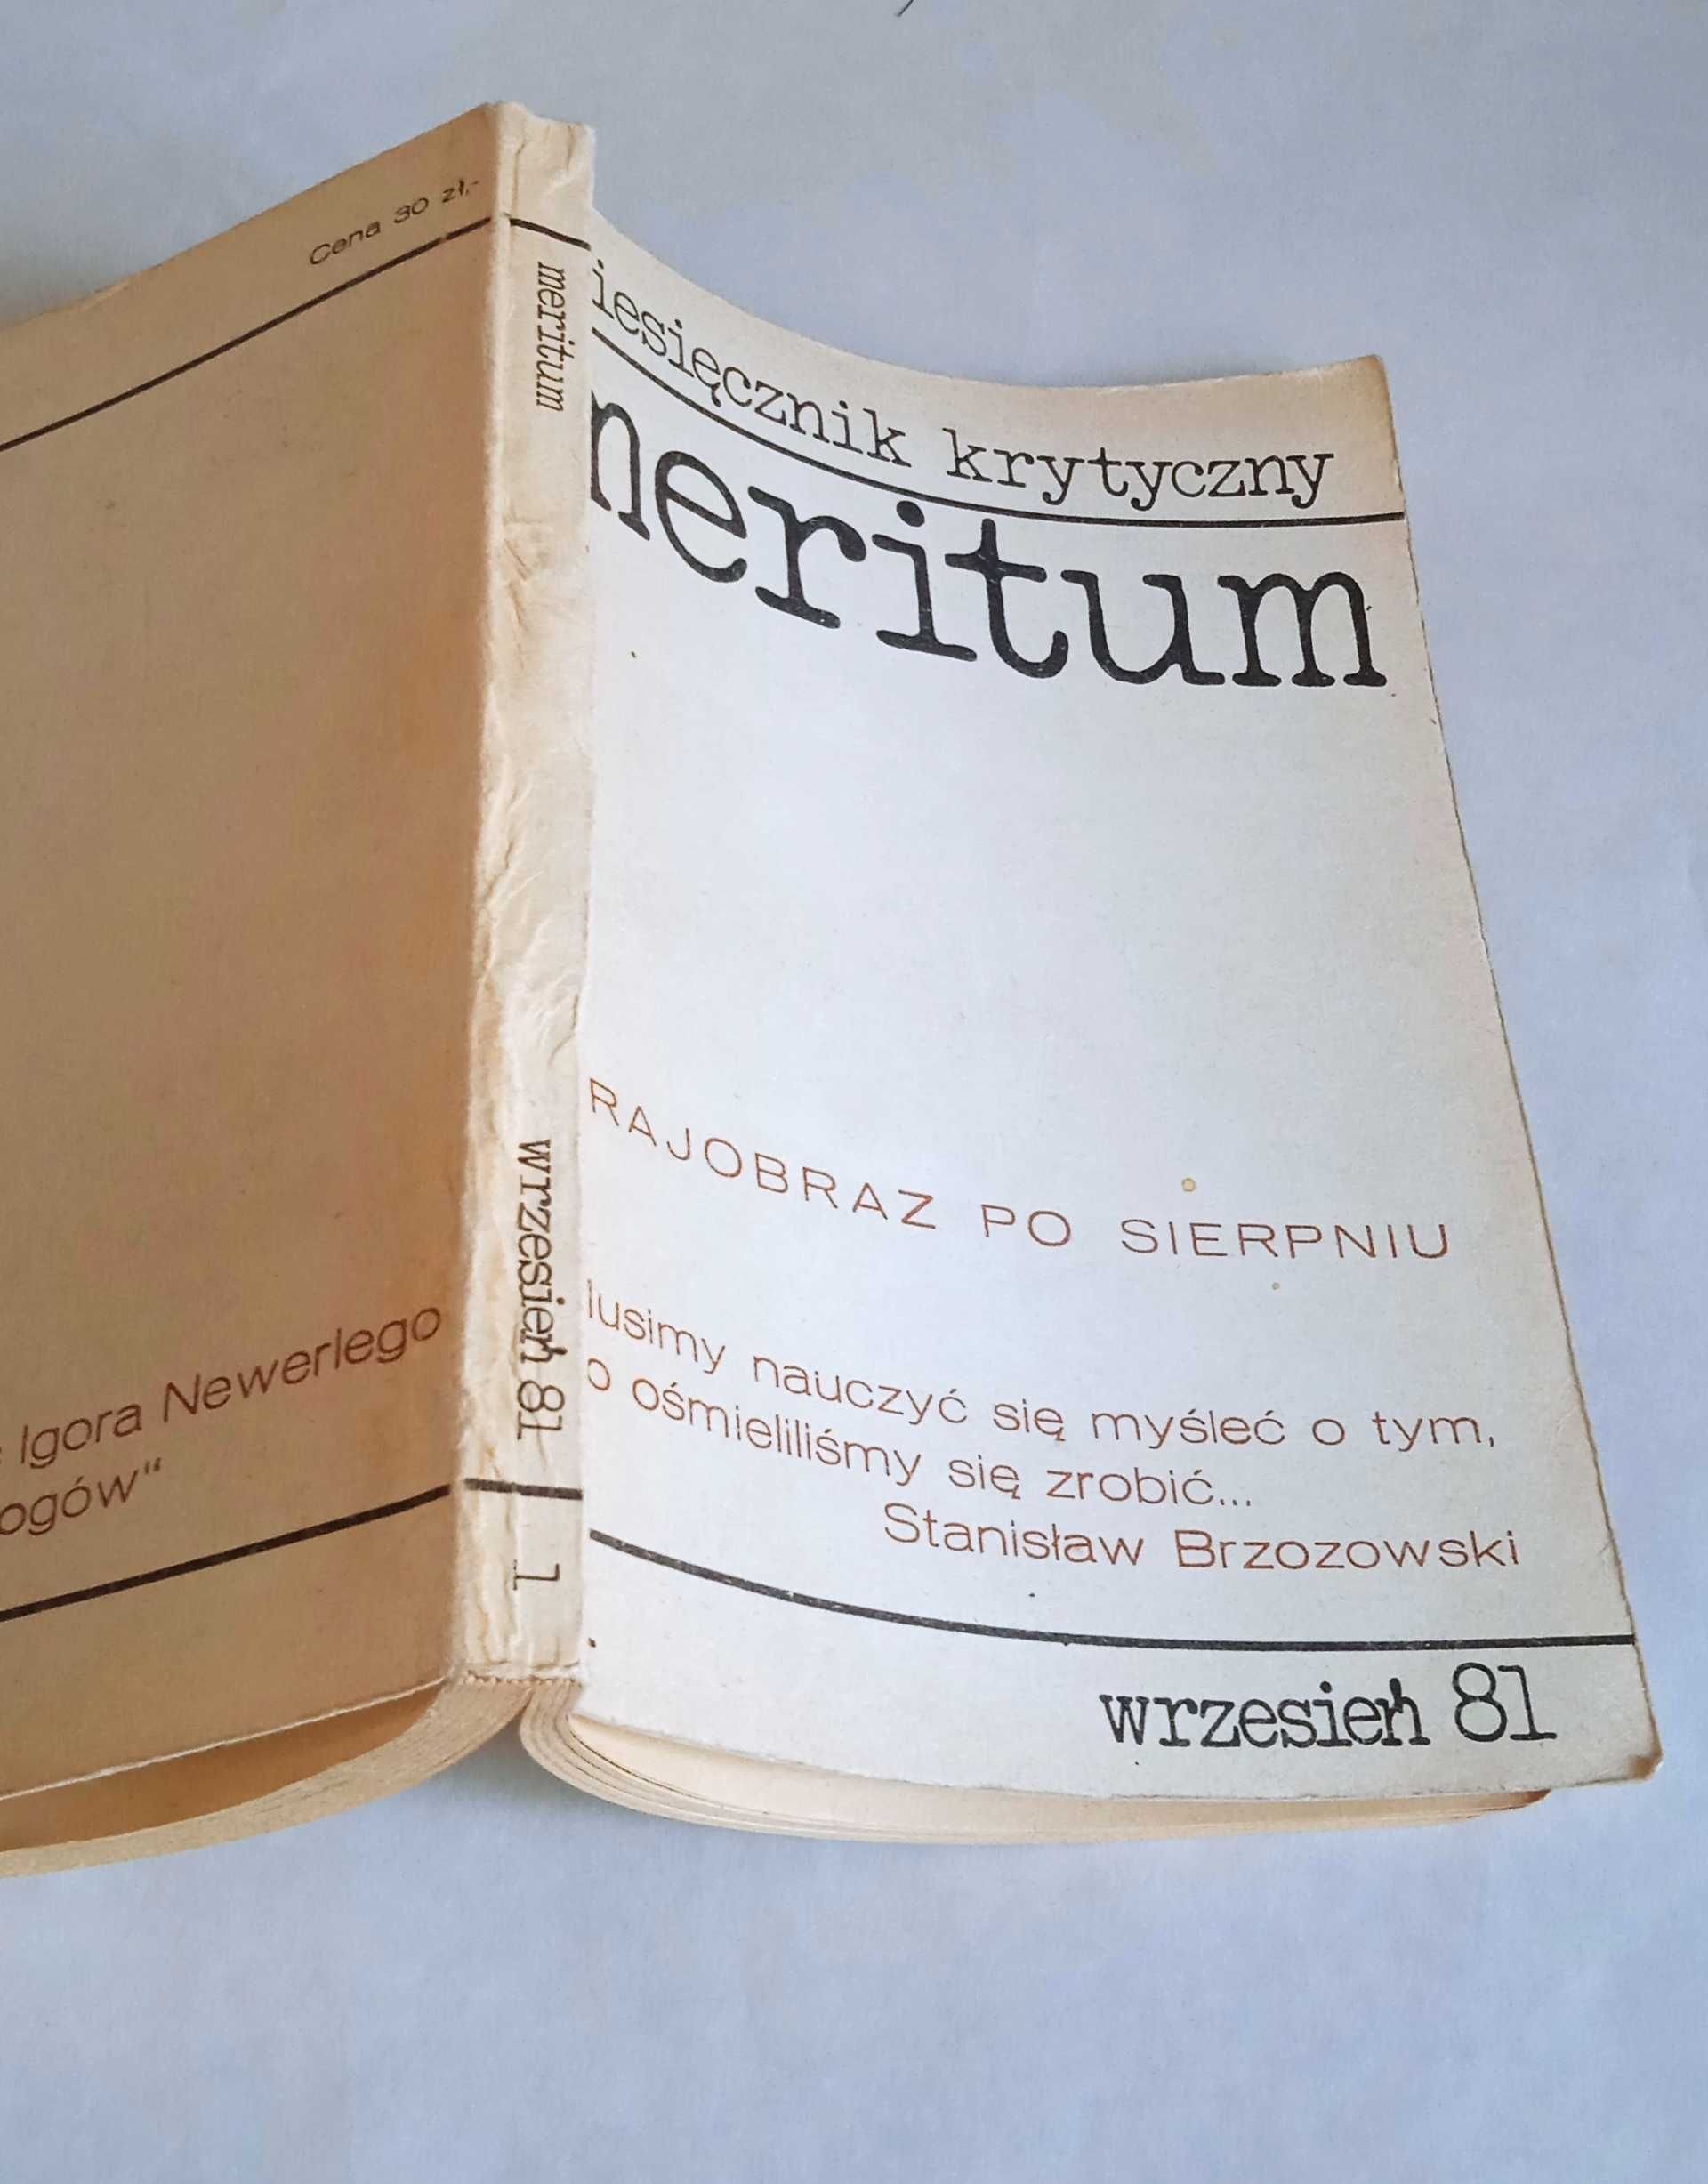 Meritum nr 1 - miesięcznik krytyczny wrzesień '81